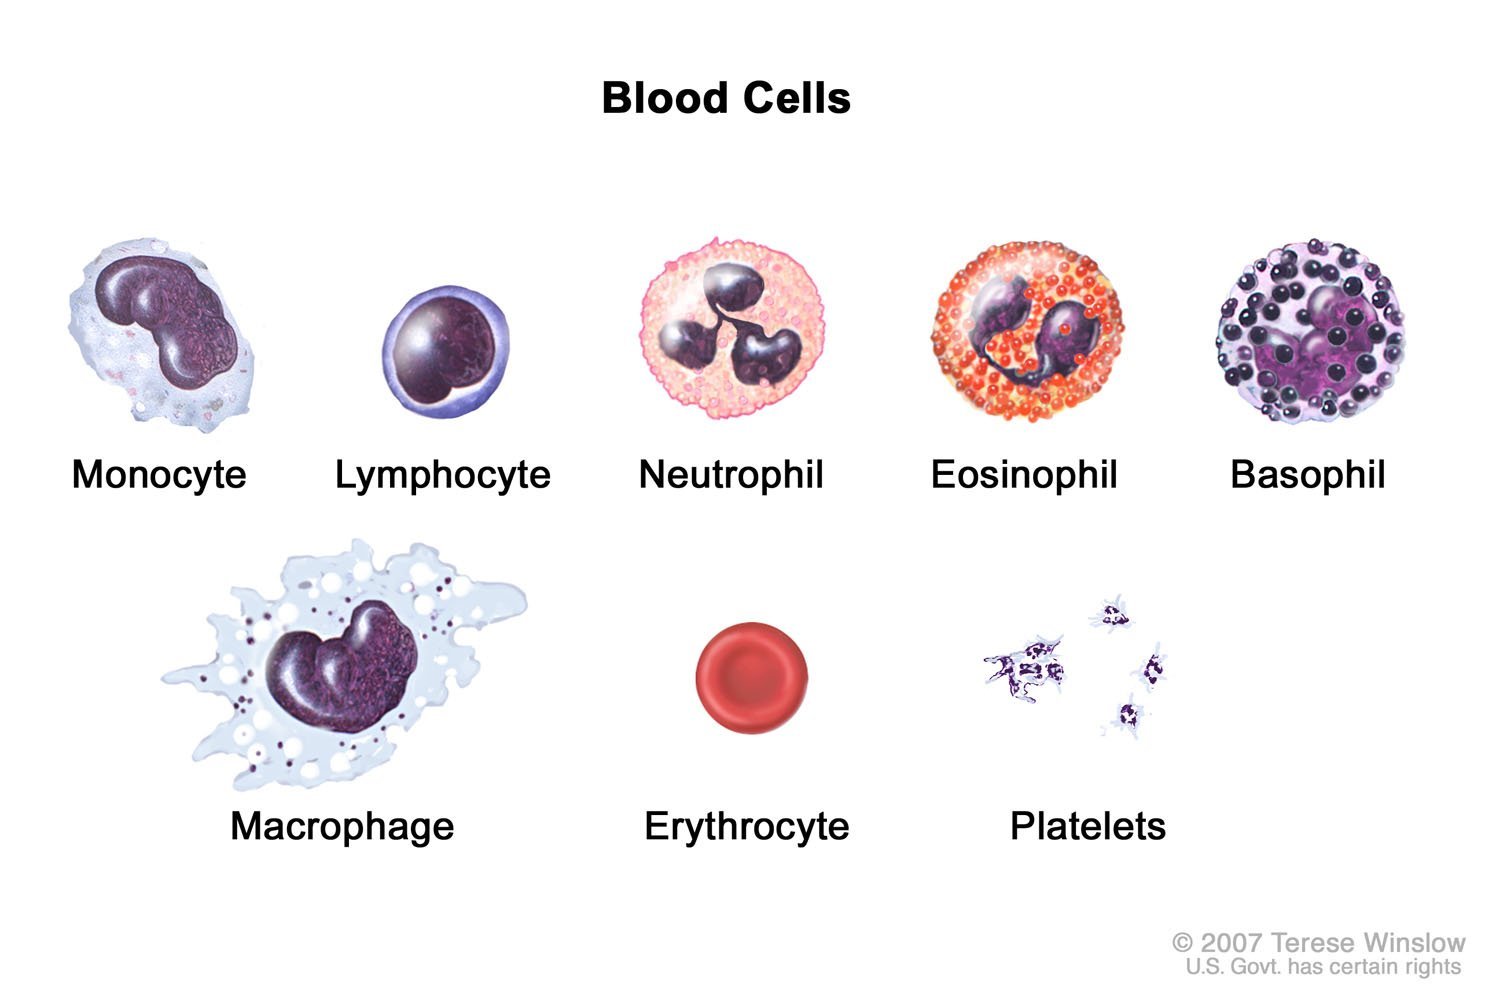 Neutrófilos bajos y linfocitos altos